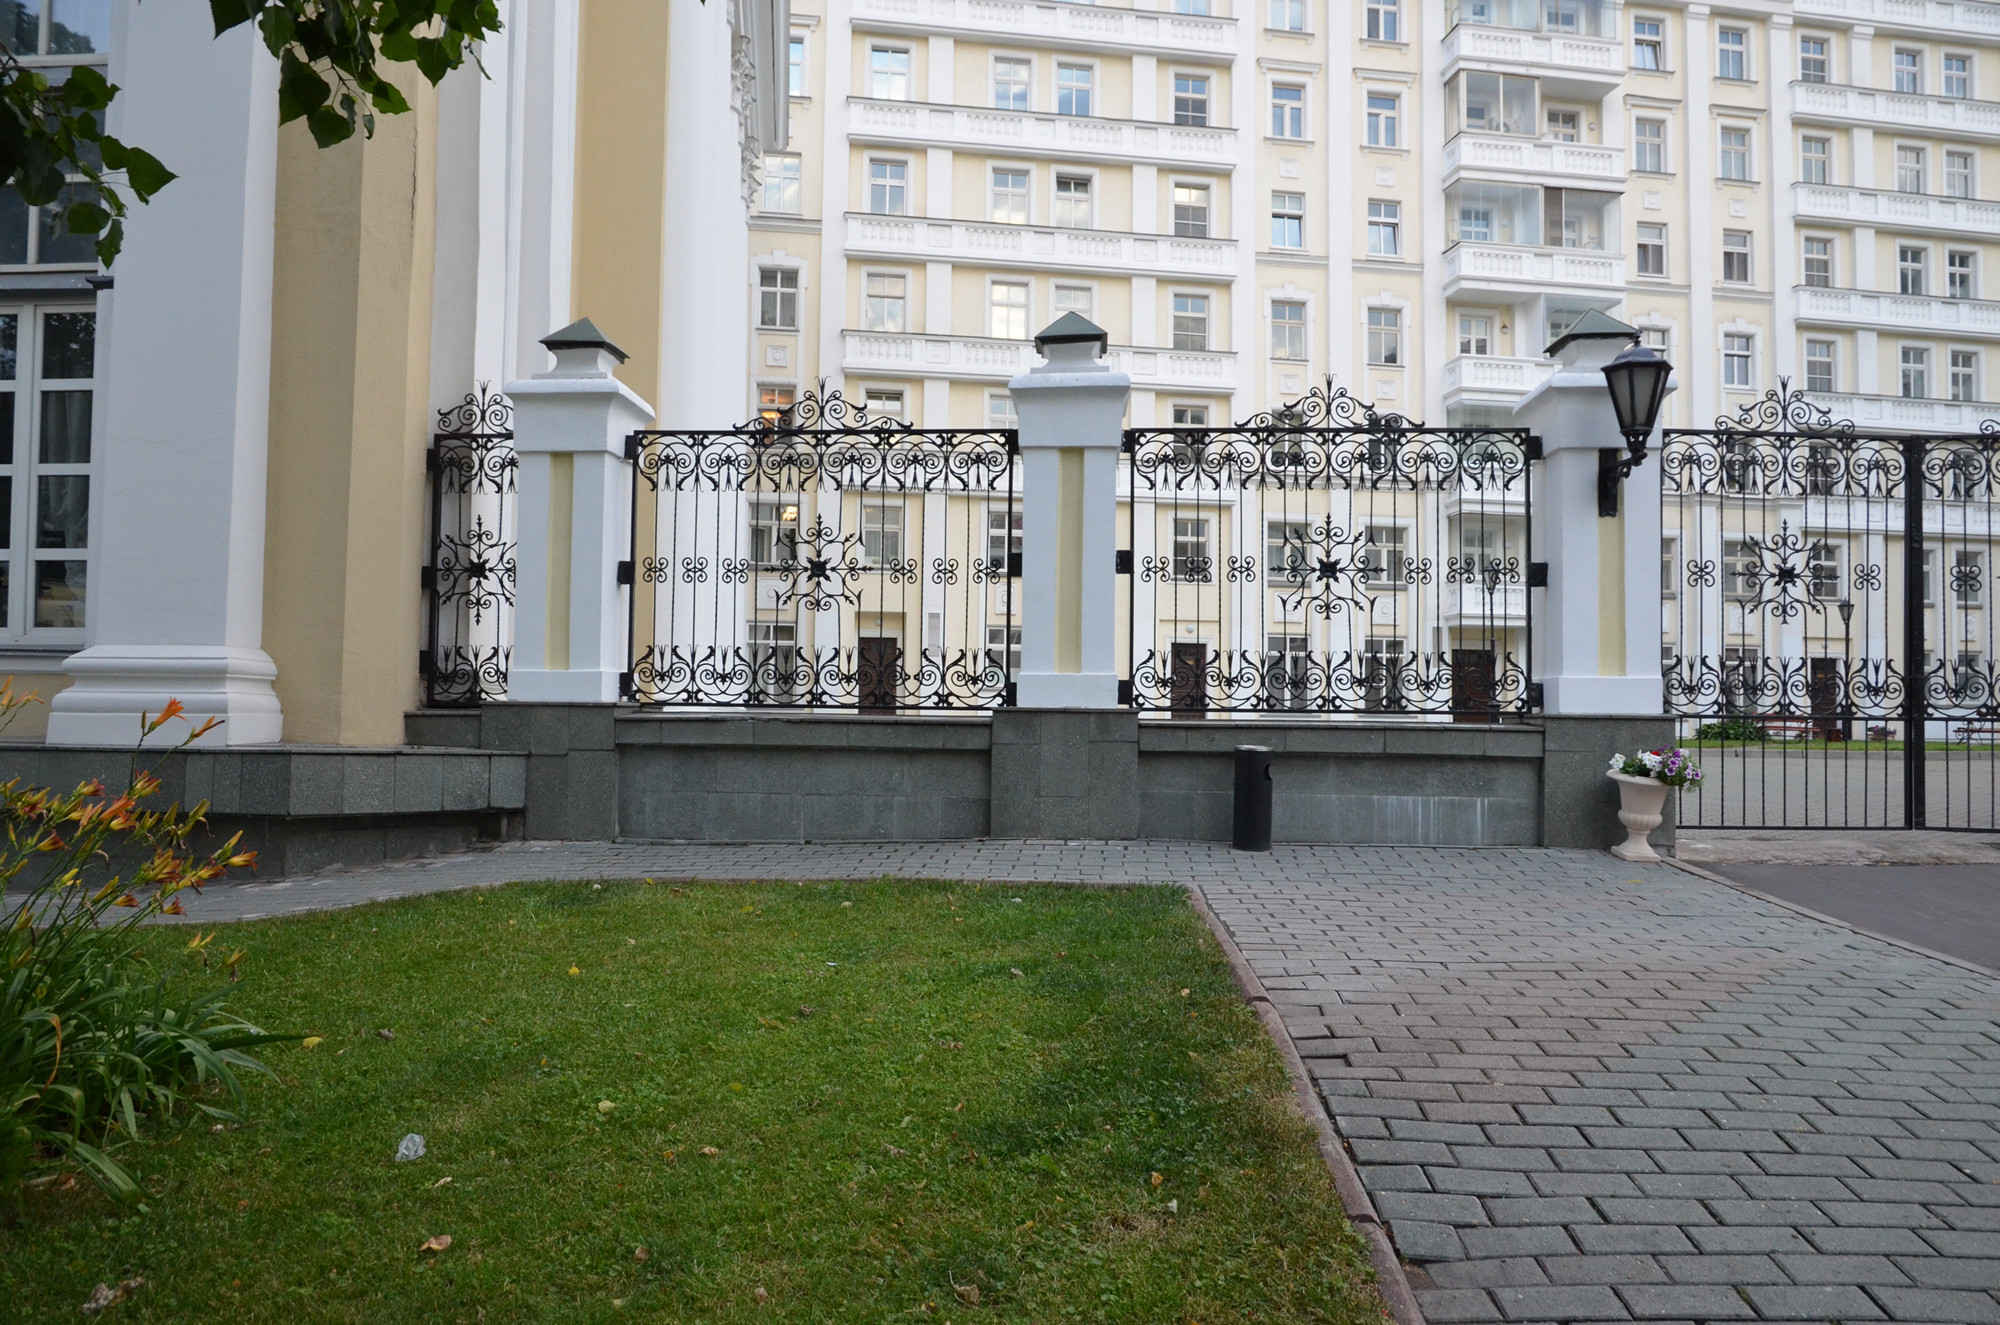 Москва, улица Остоженка, 25. Место установки памятника и окружающая территория